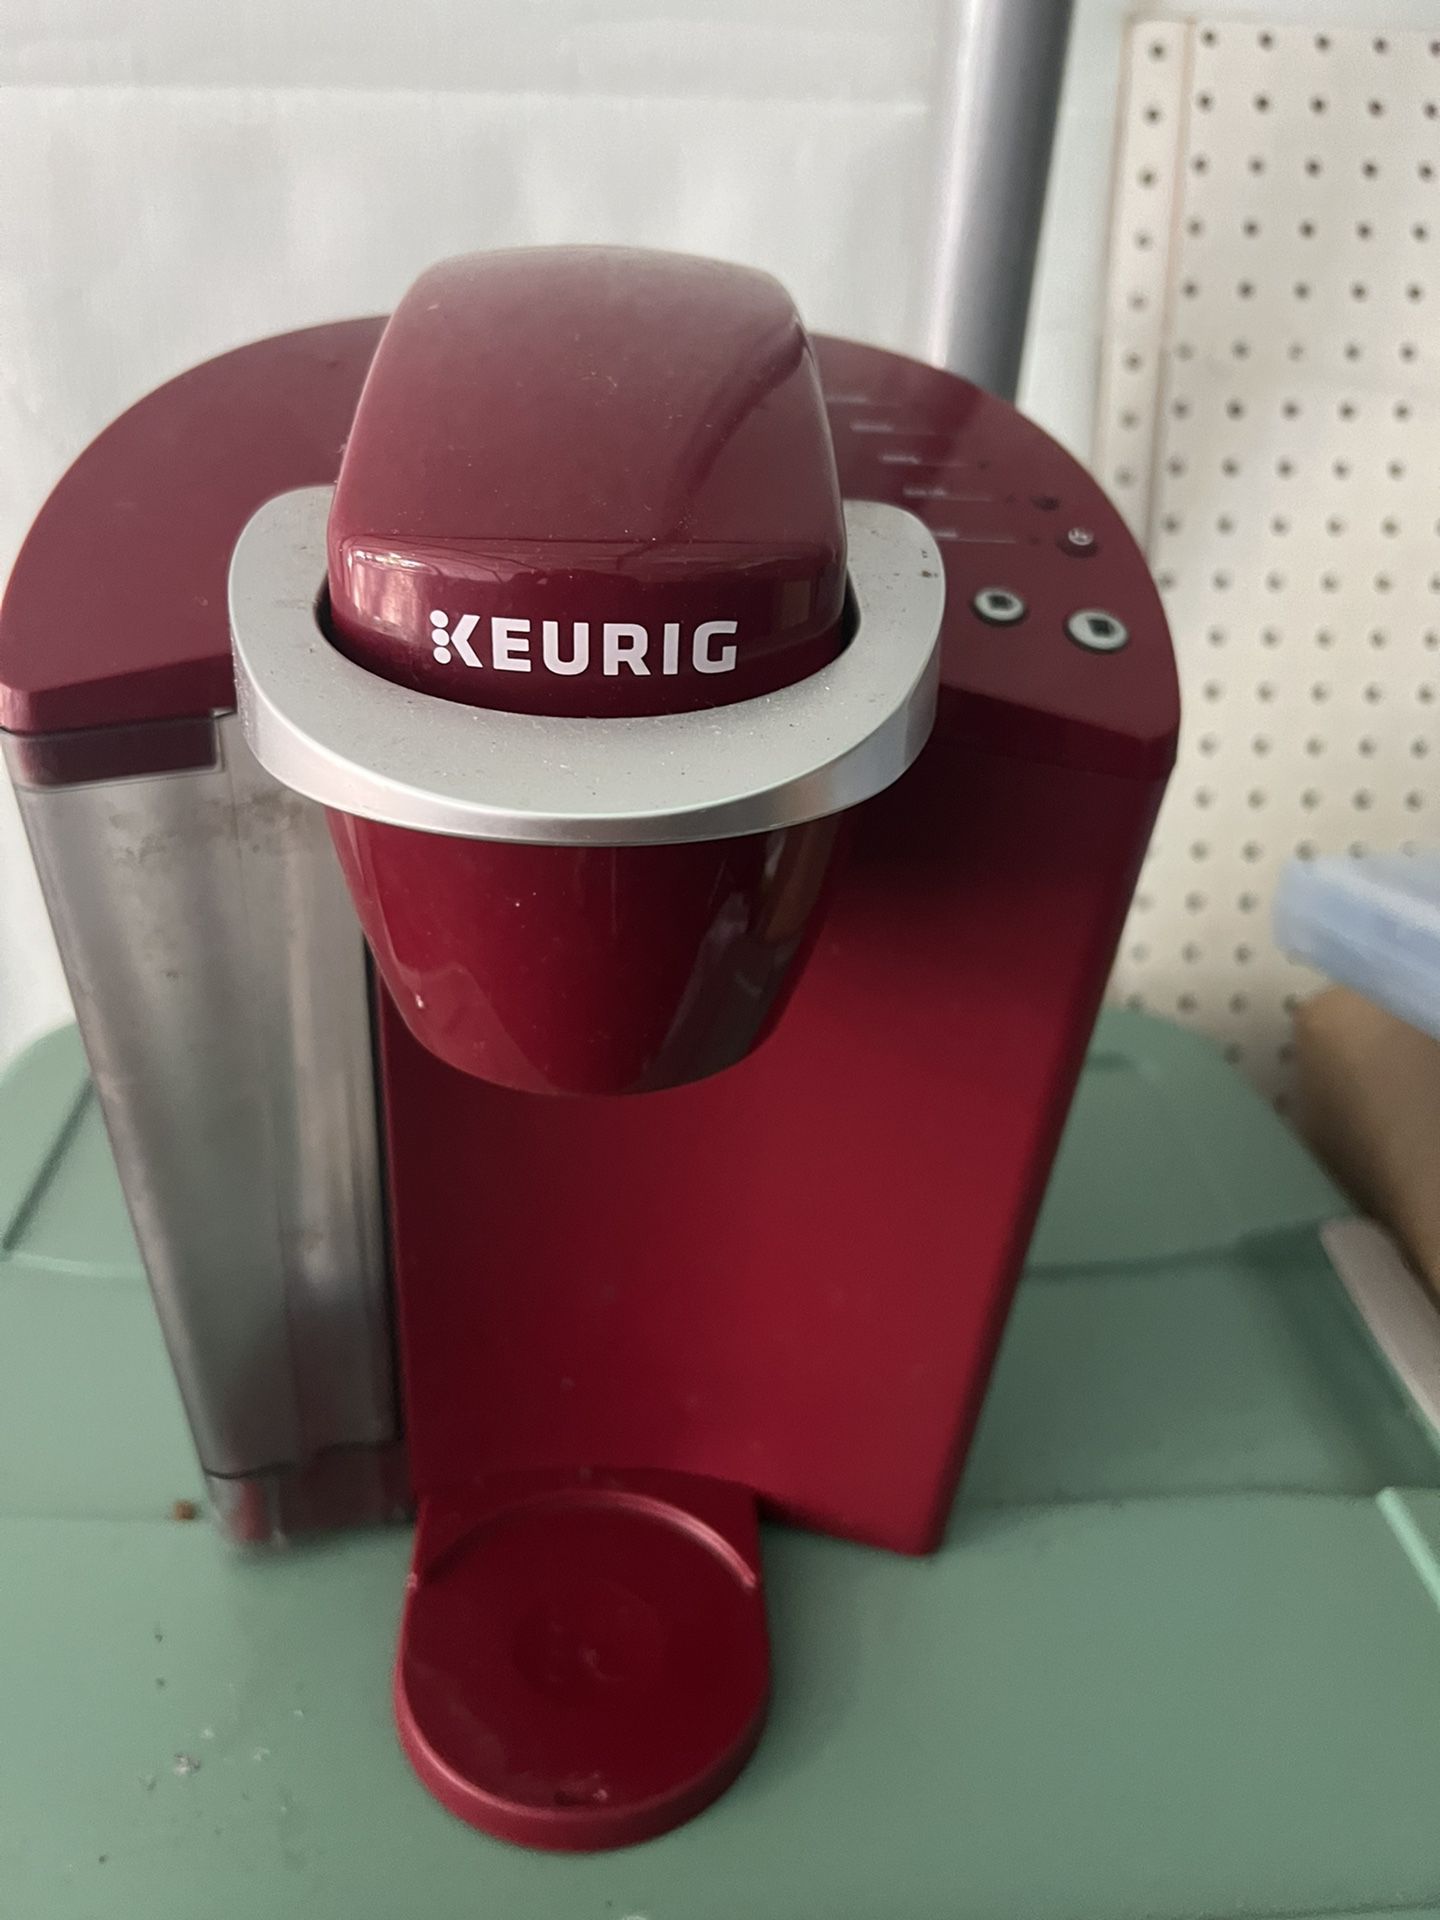 Keuric Coffee Maker